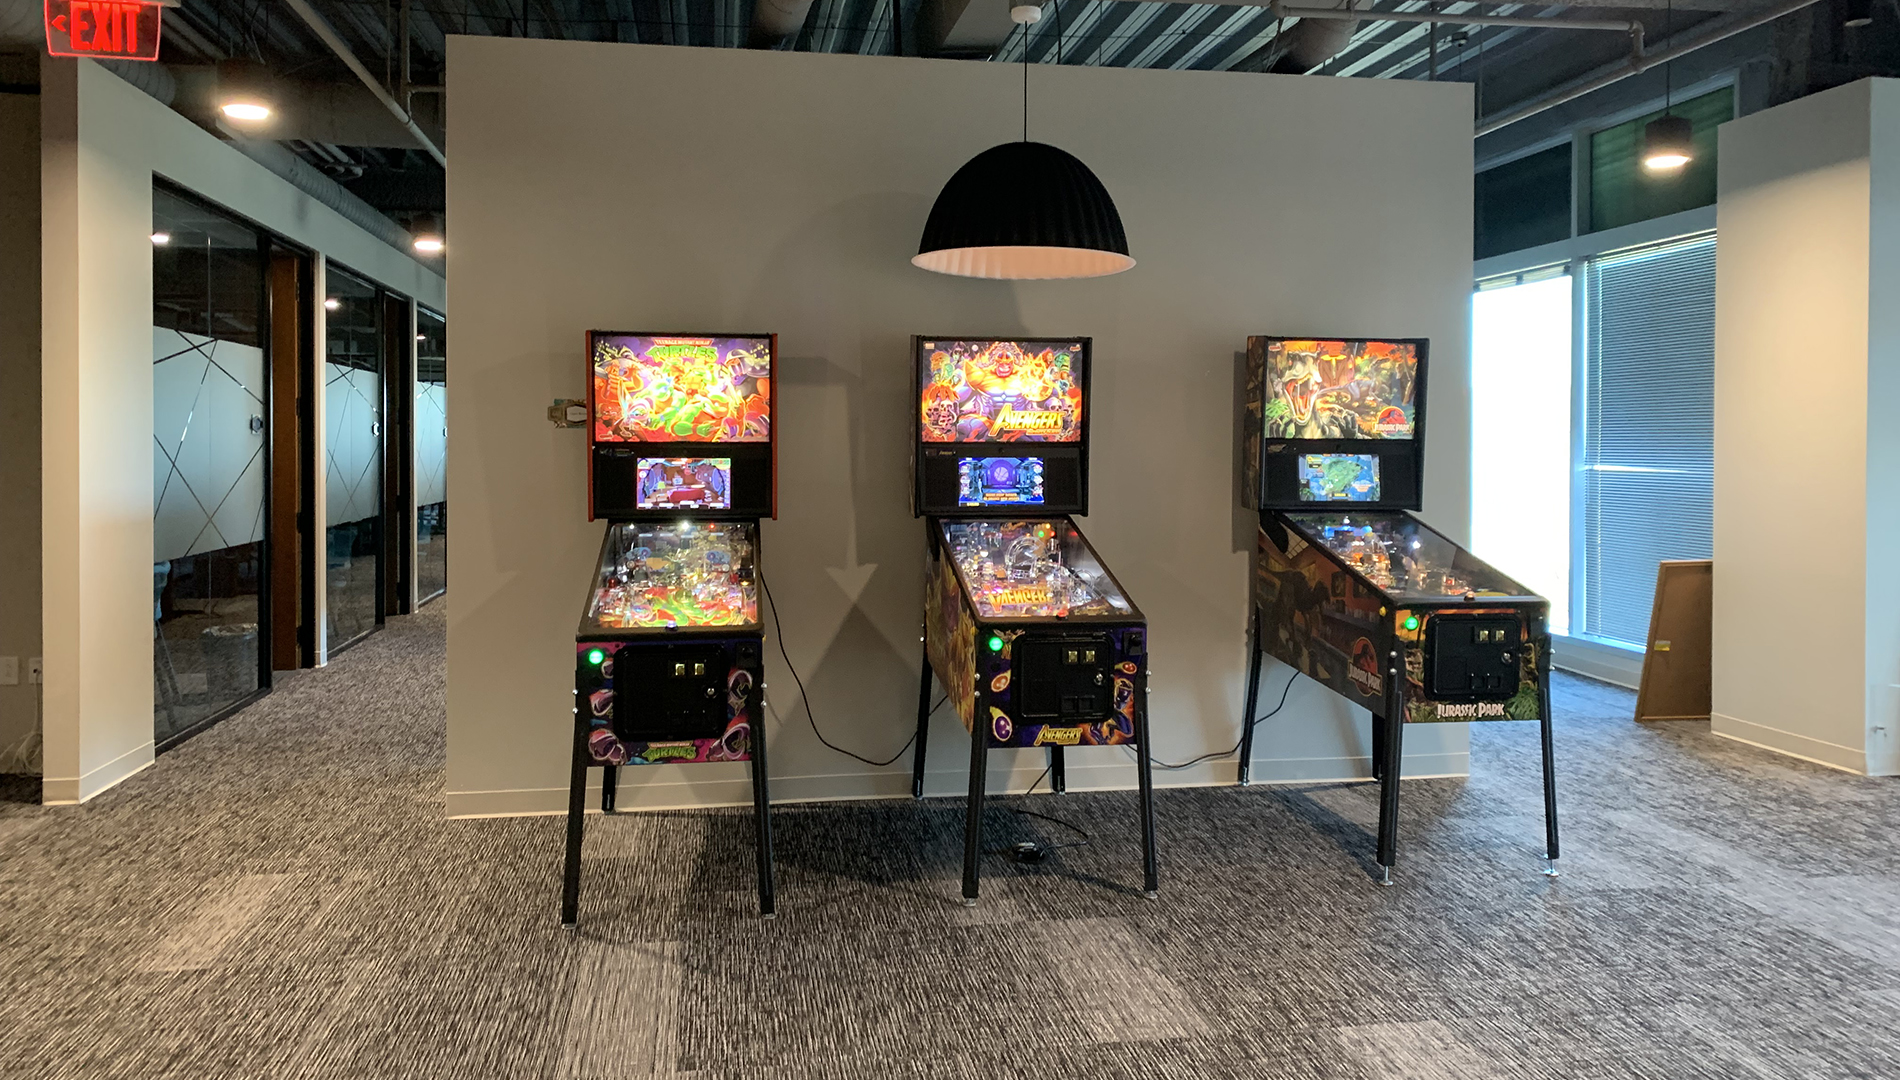 Open Area - arcade games